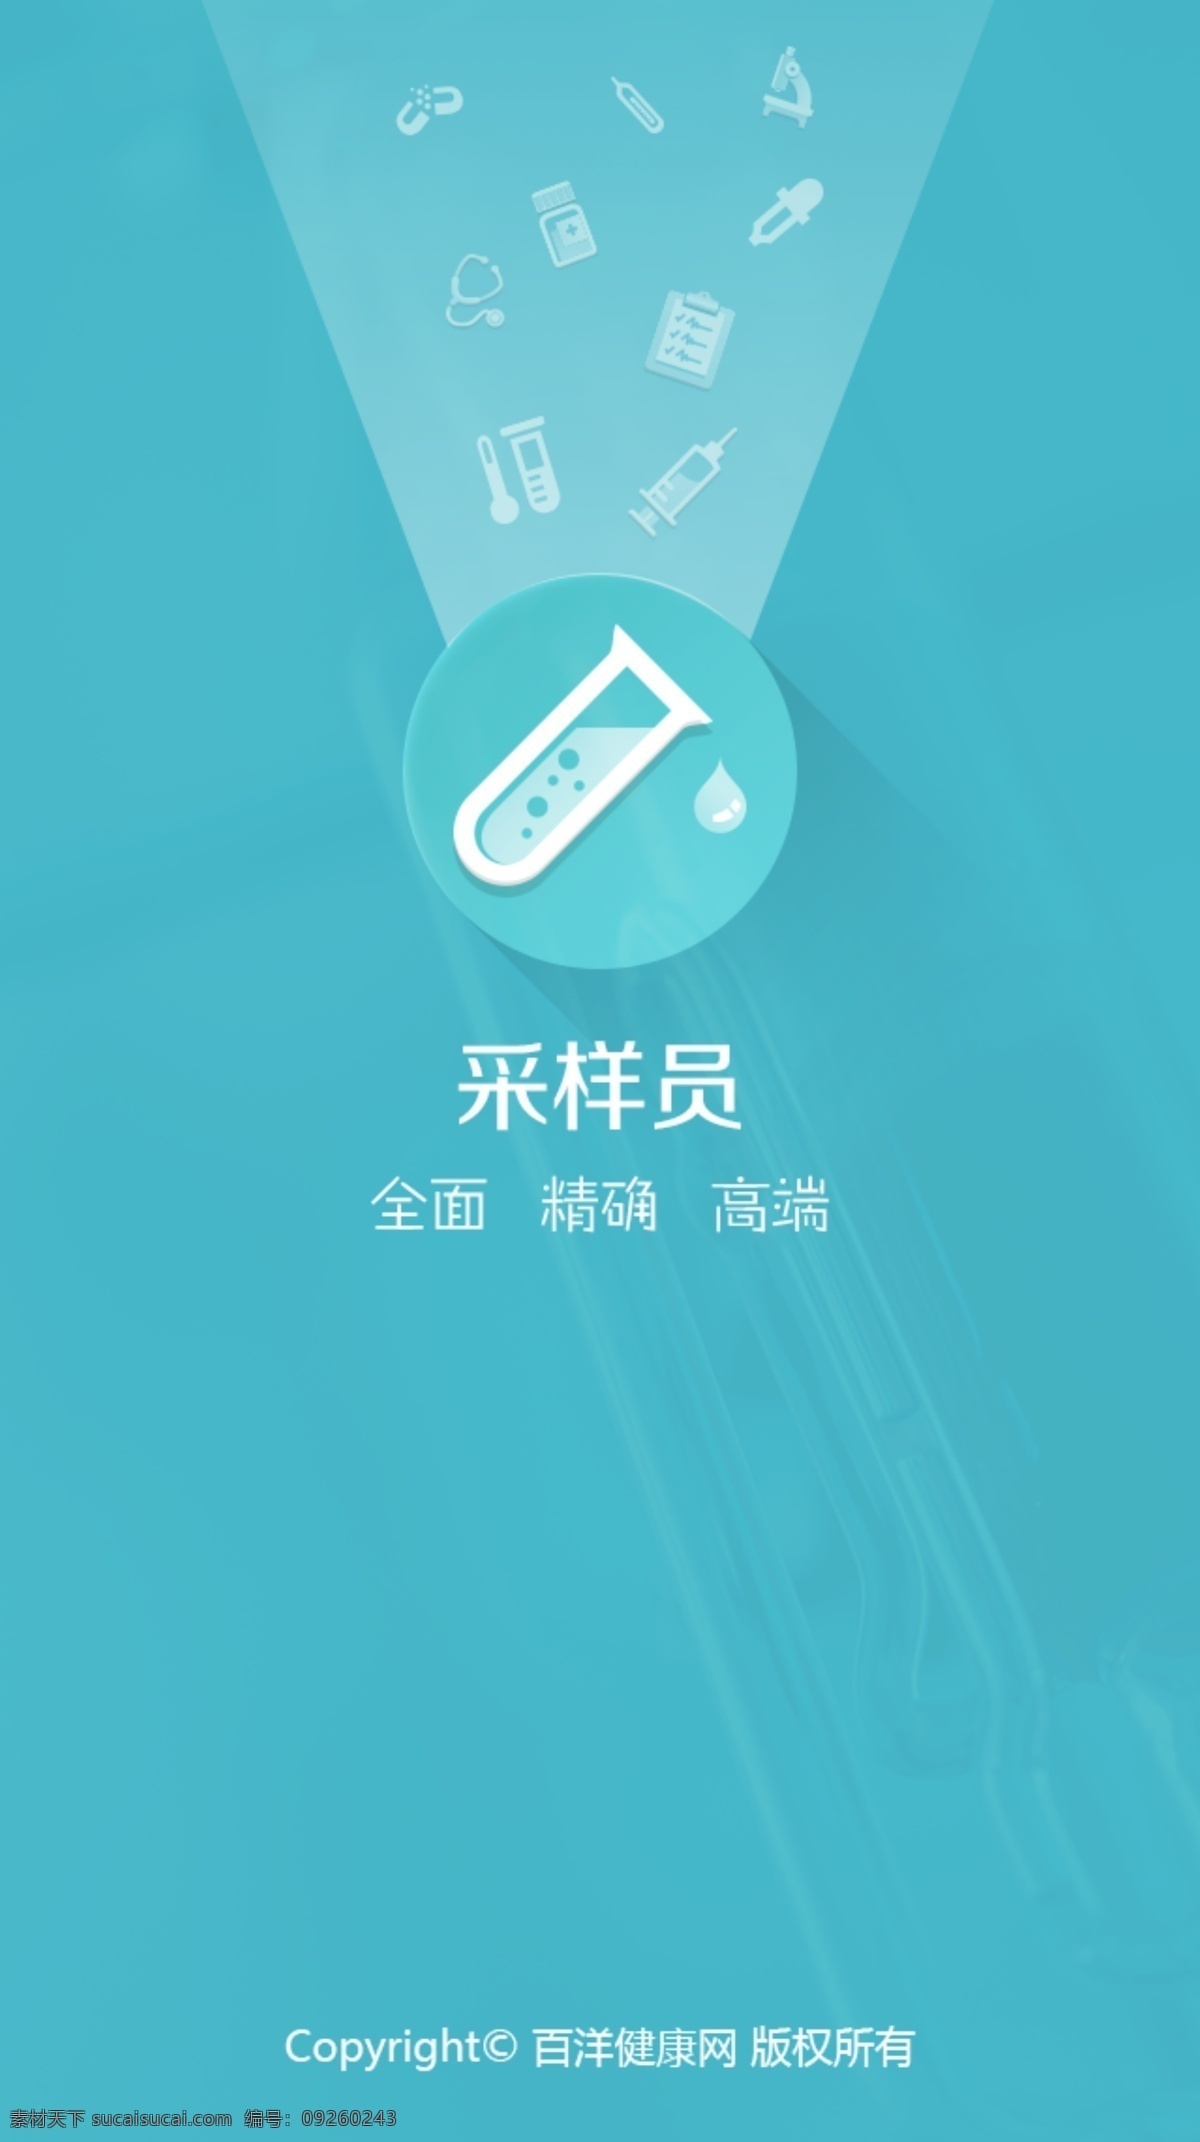 医学类 手机 app 启动 界面 采用 扁平化 风格 用于 启动界面 青色 天蓝色